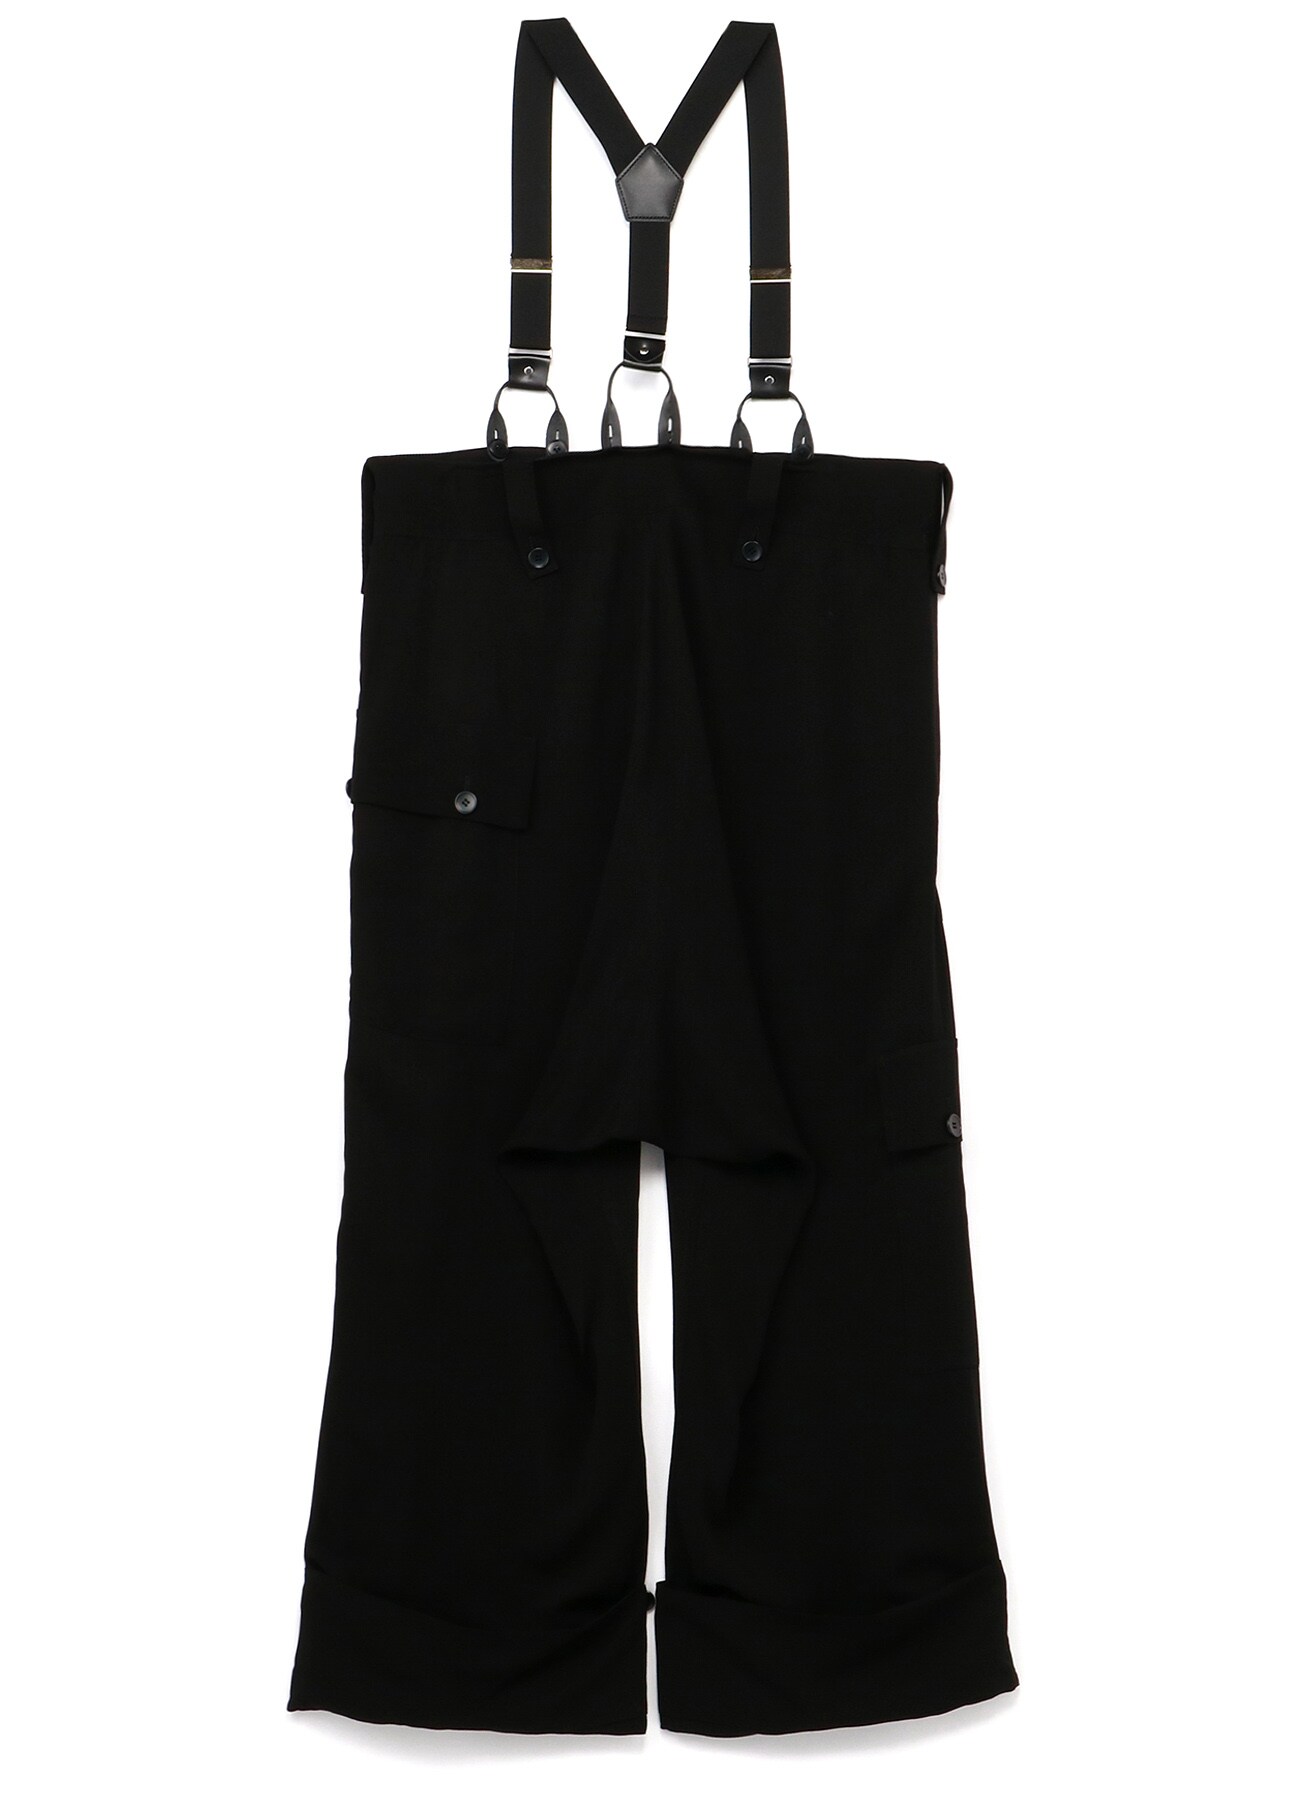 Ry/Cu Ascii Eye Print Suspenders Pants